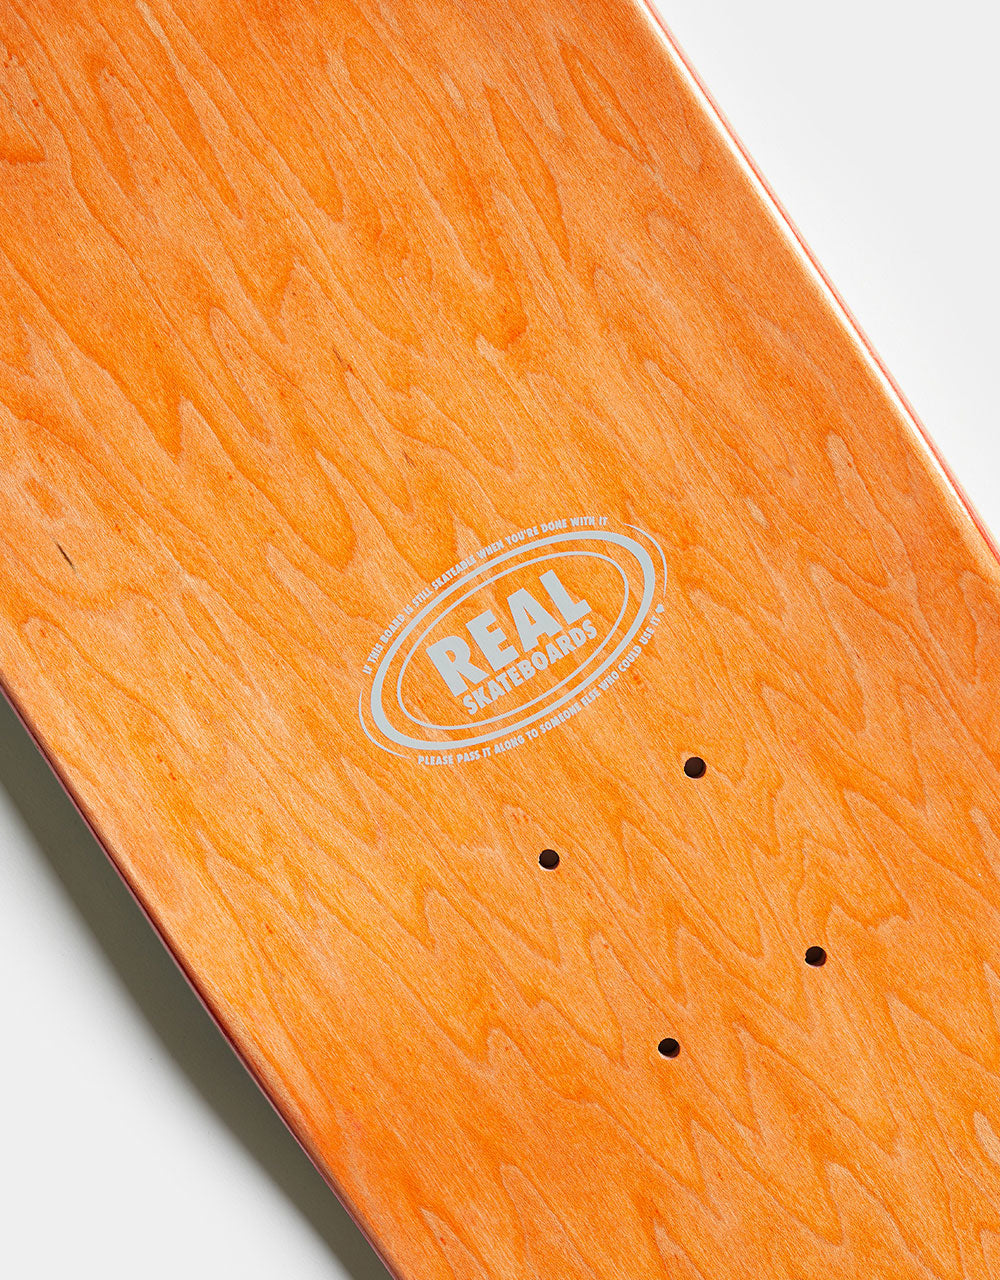 Real Busenitz Overlord 'FULL SE' Skateboard Deck - 8.5"